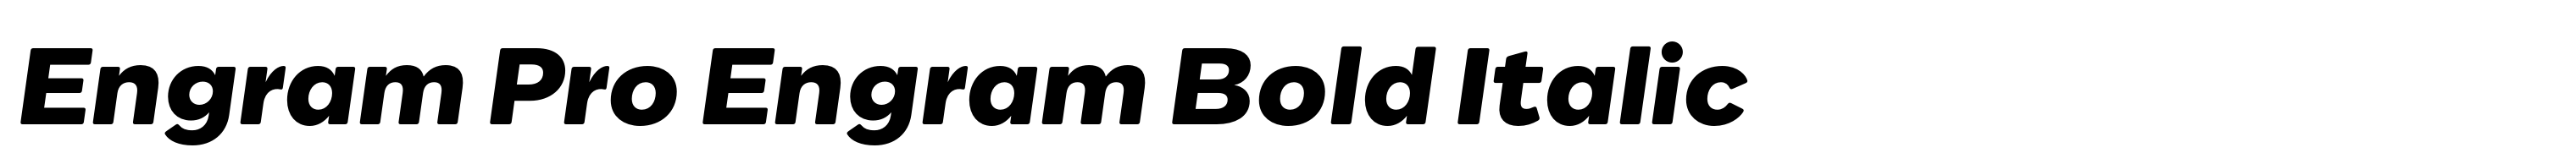 Engram Pro Engram Bold Italic